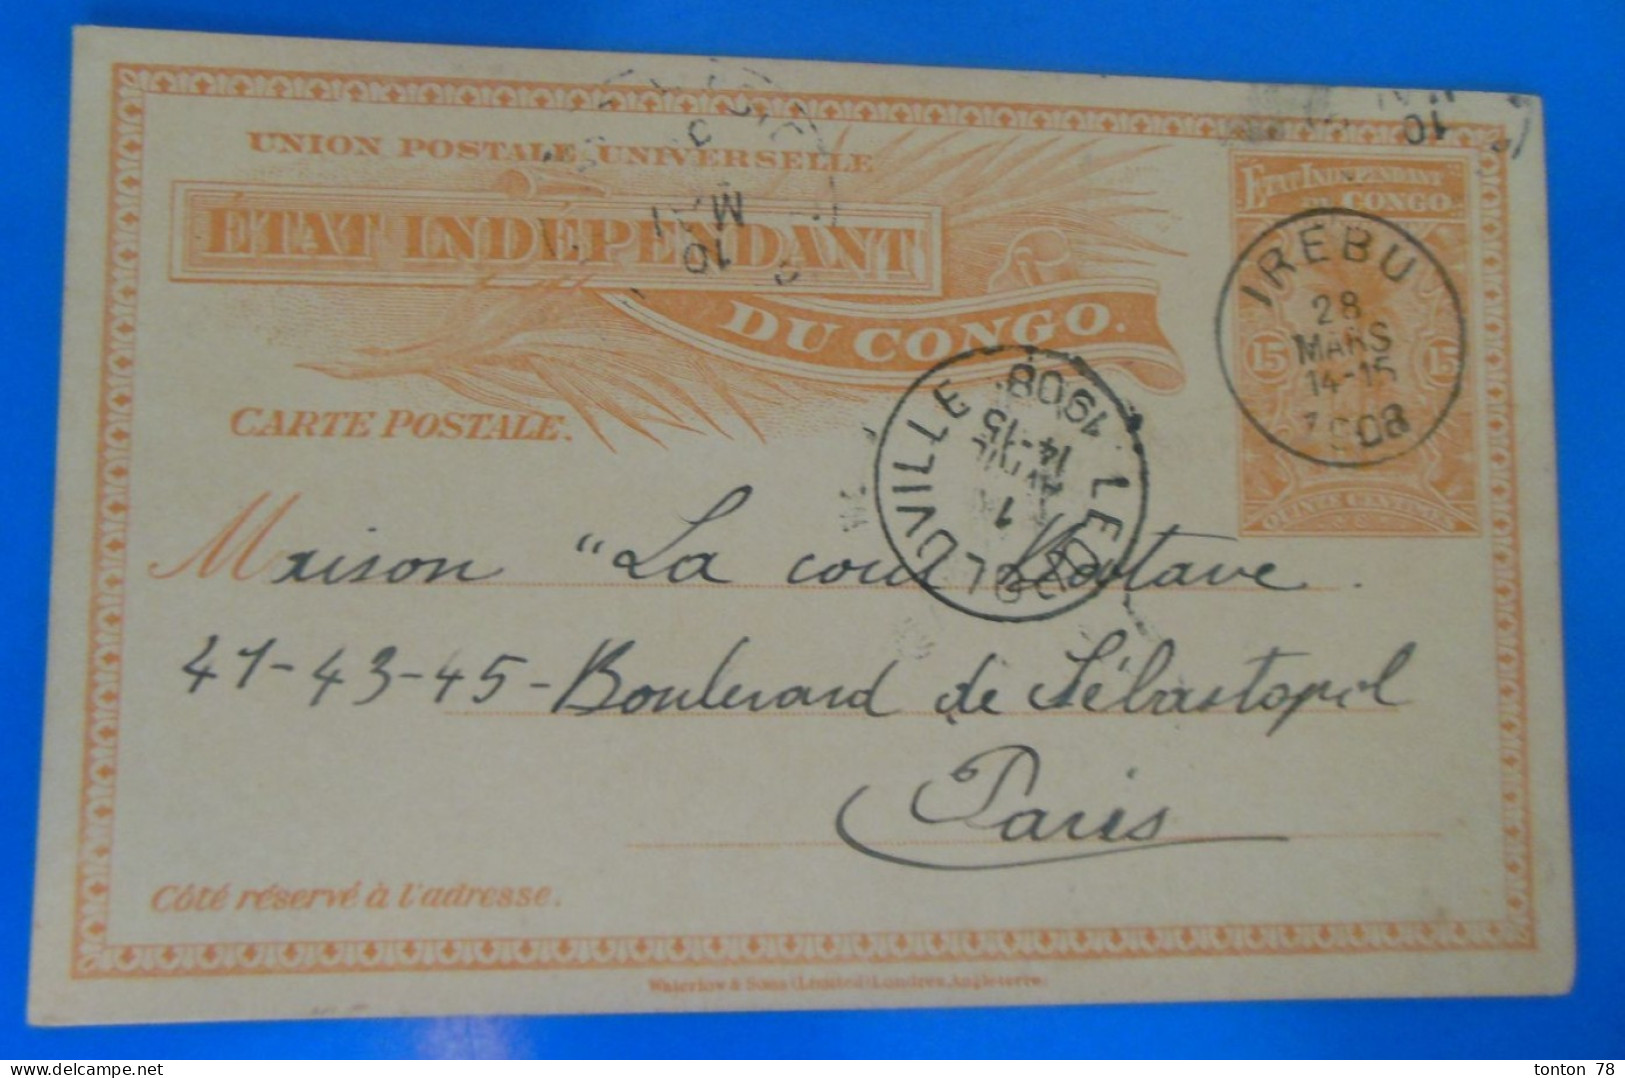 ENTIER POSTAL SUR CARTE  -  ETAT INDEPENDANT DU CONGO  1908 - Lettres & Documents